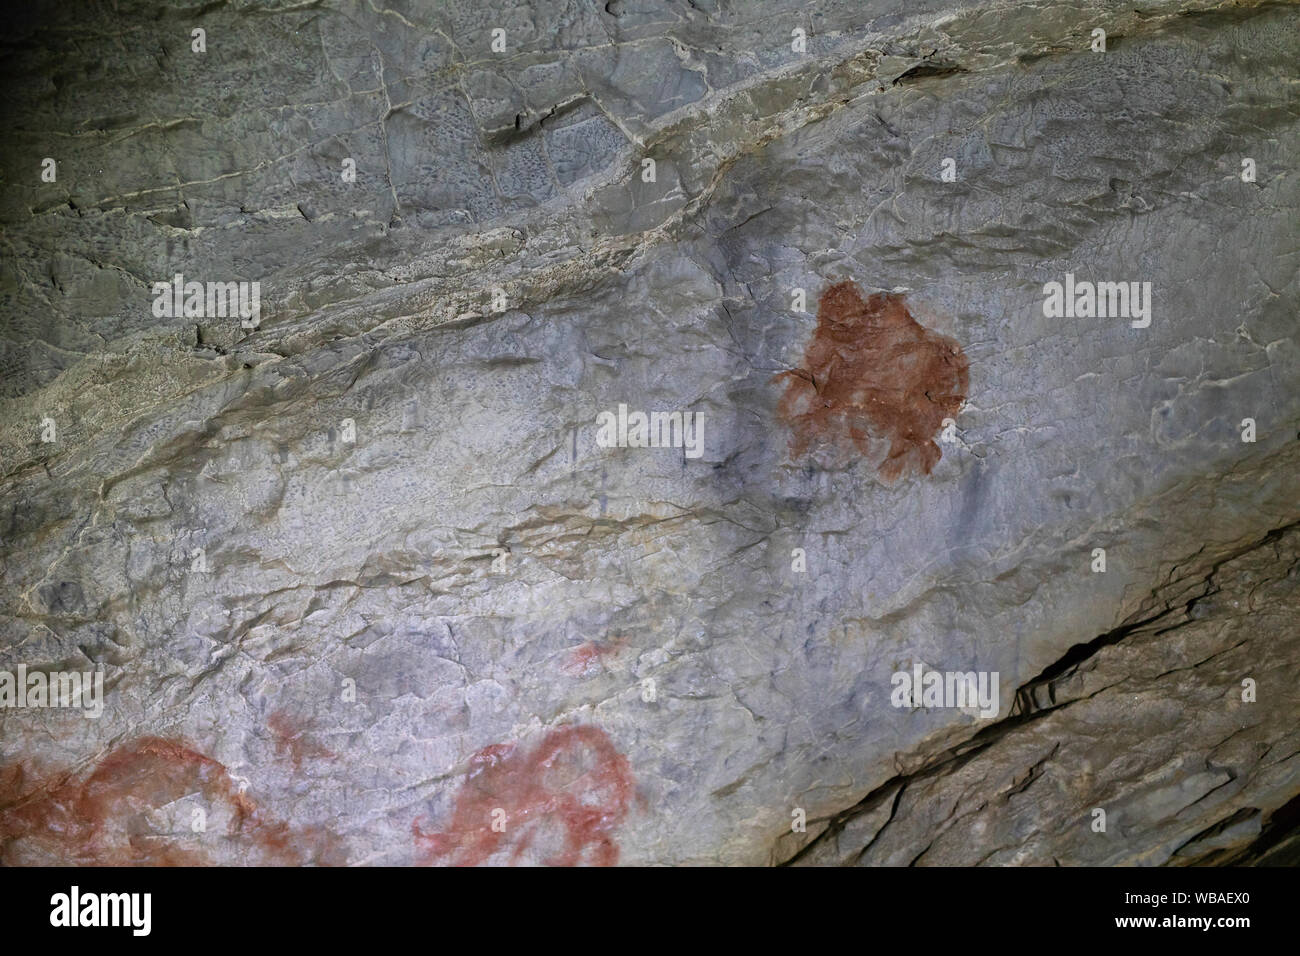 Image d'un animal ancien mammouth. cave. ocre Dessin Peinture préhistorique Banque D'Images